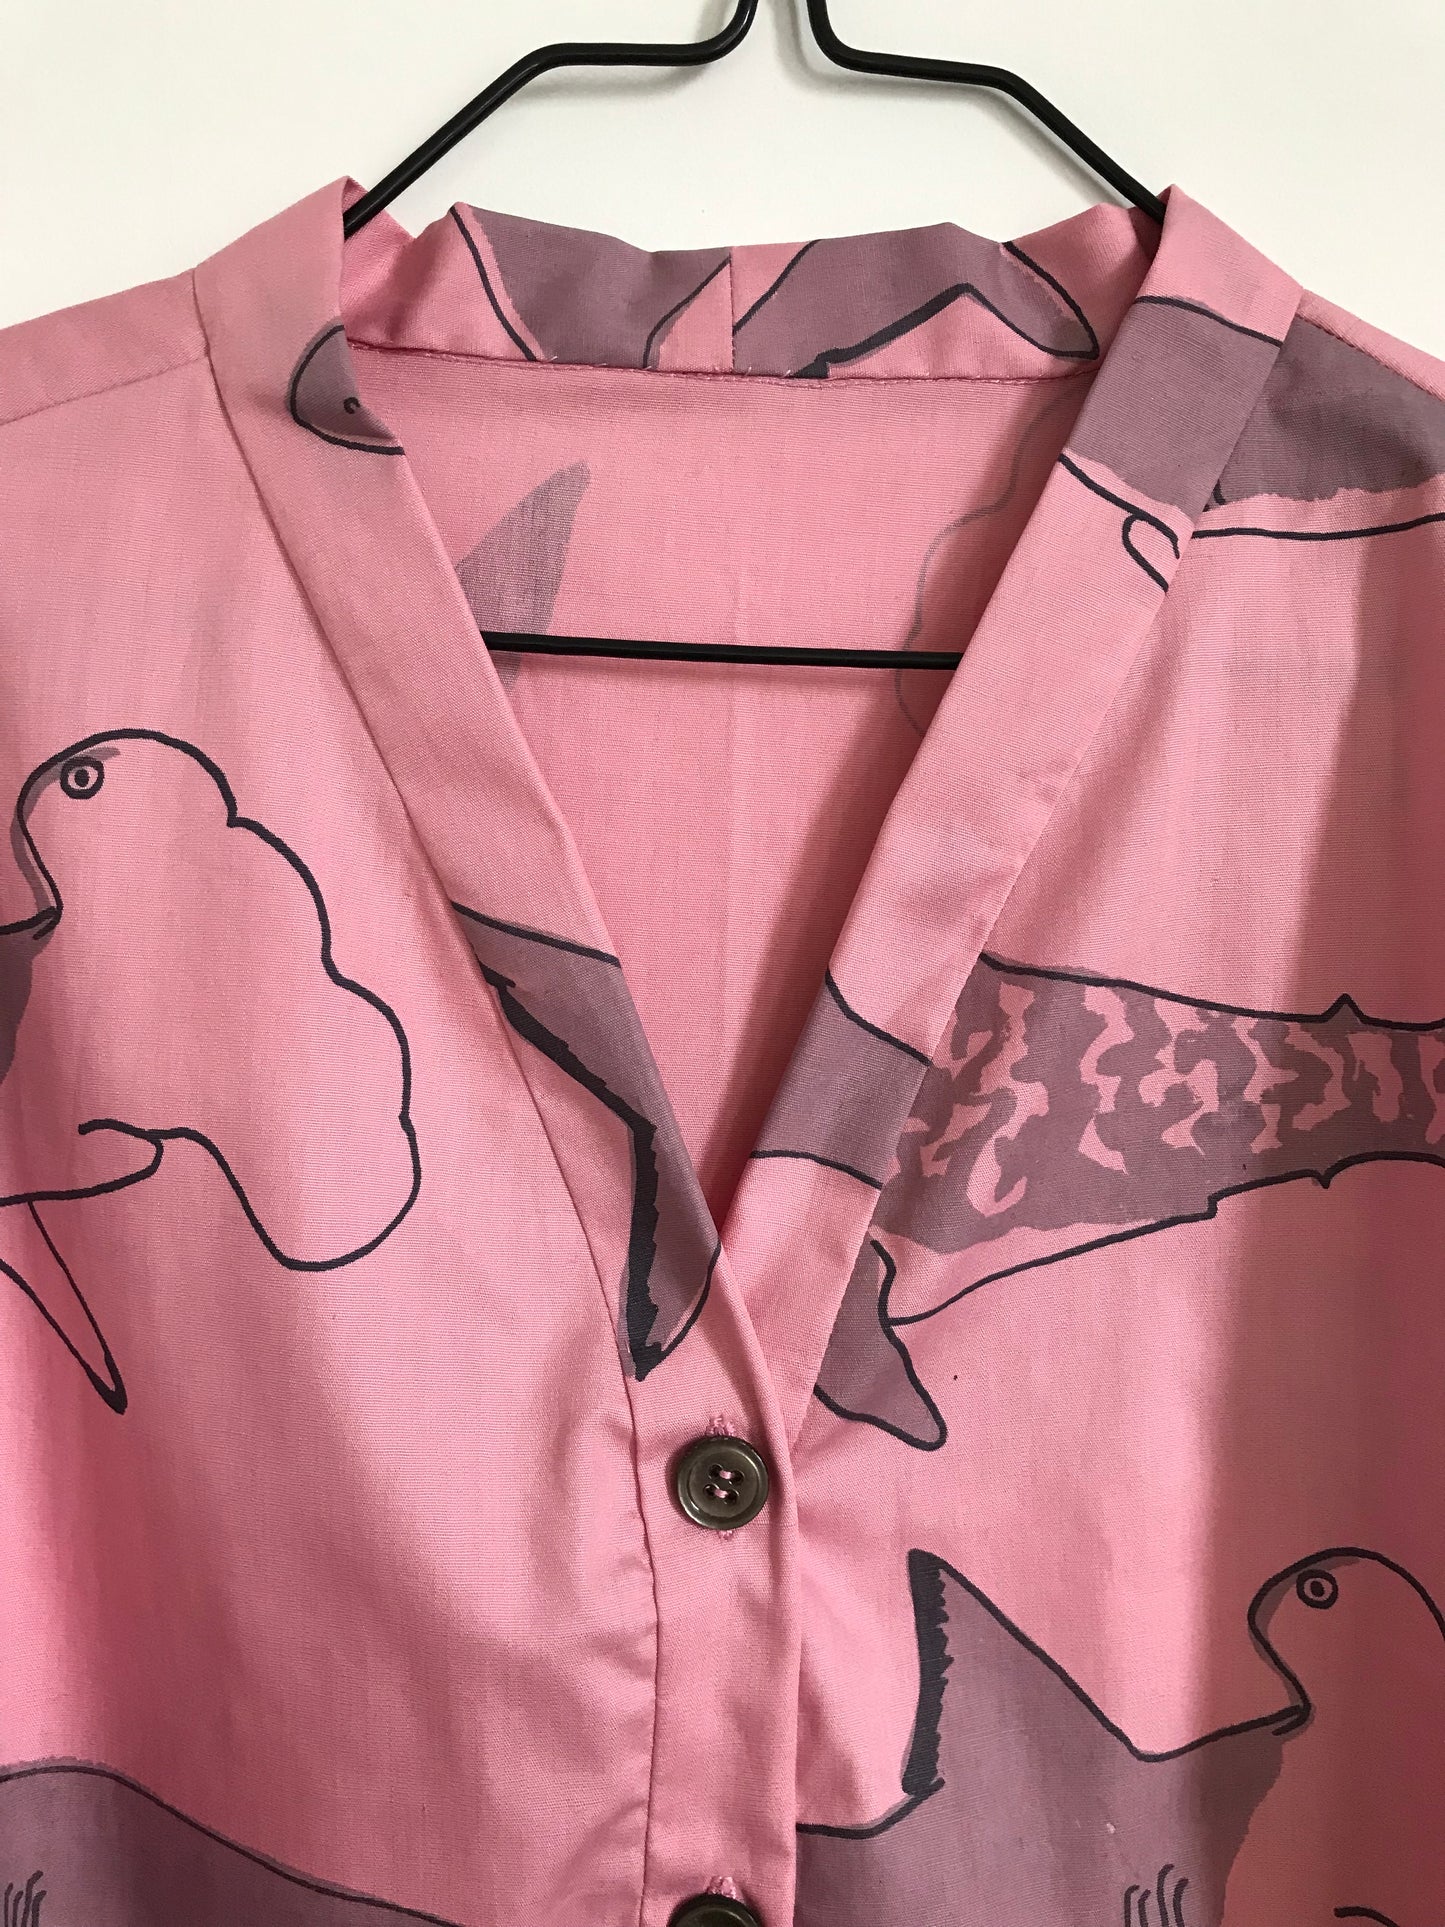 Shirtlet Shark Medley